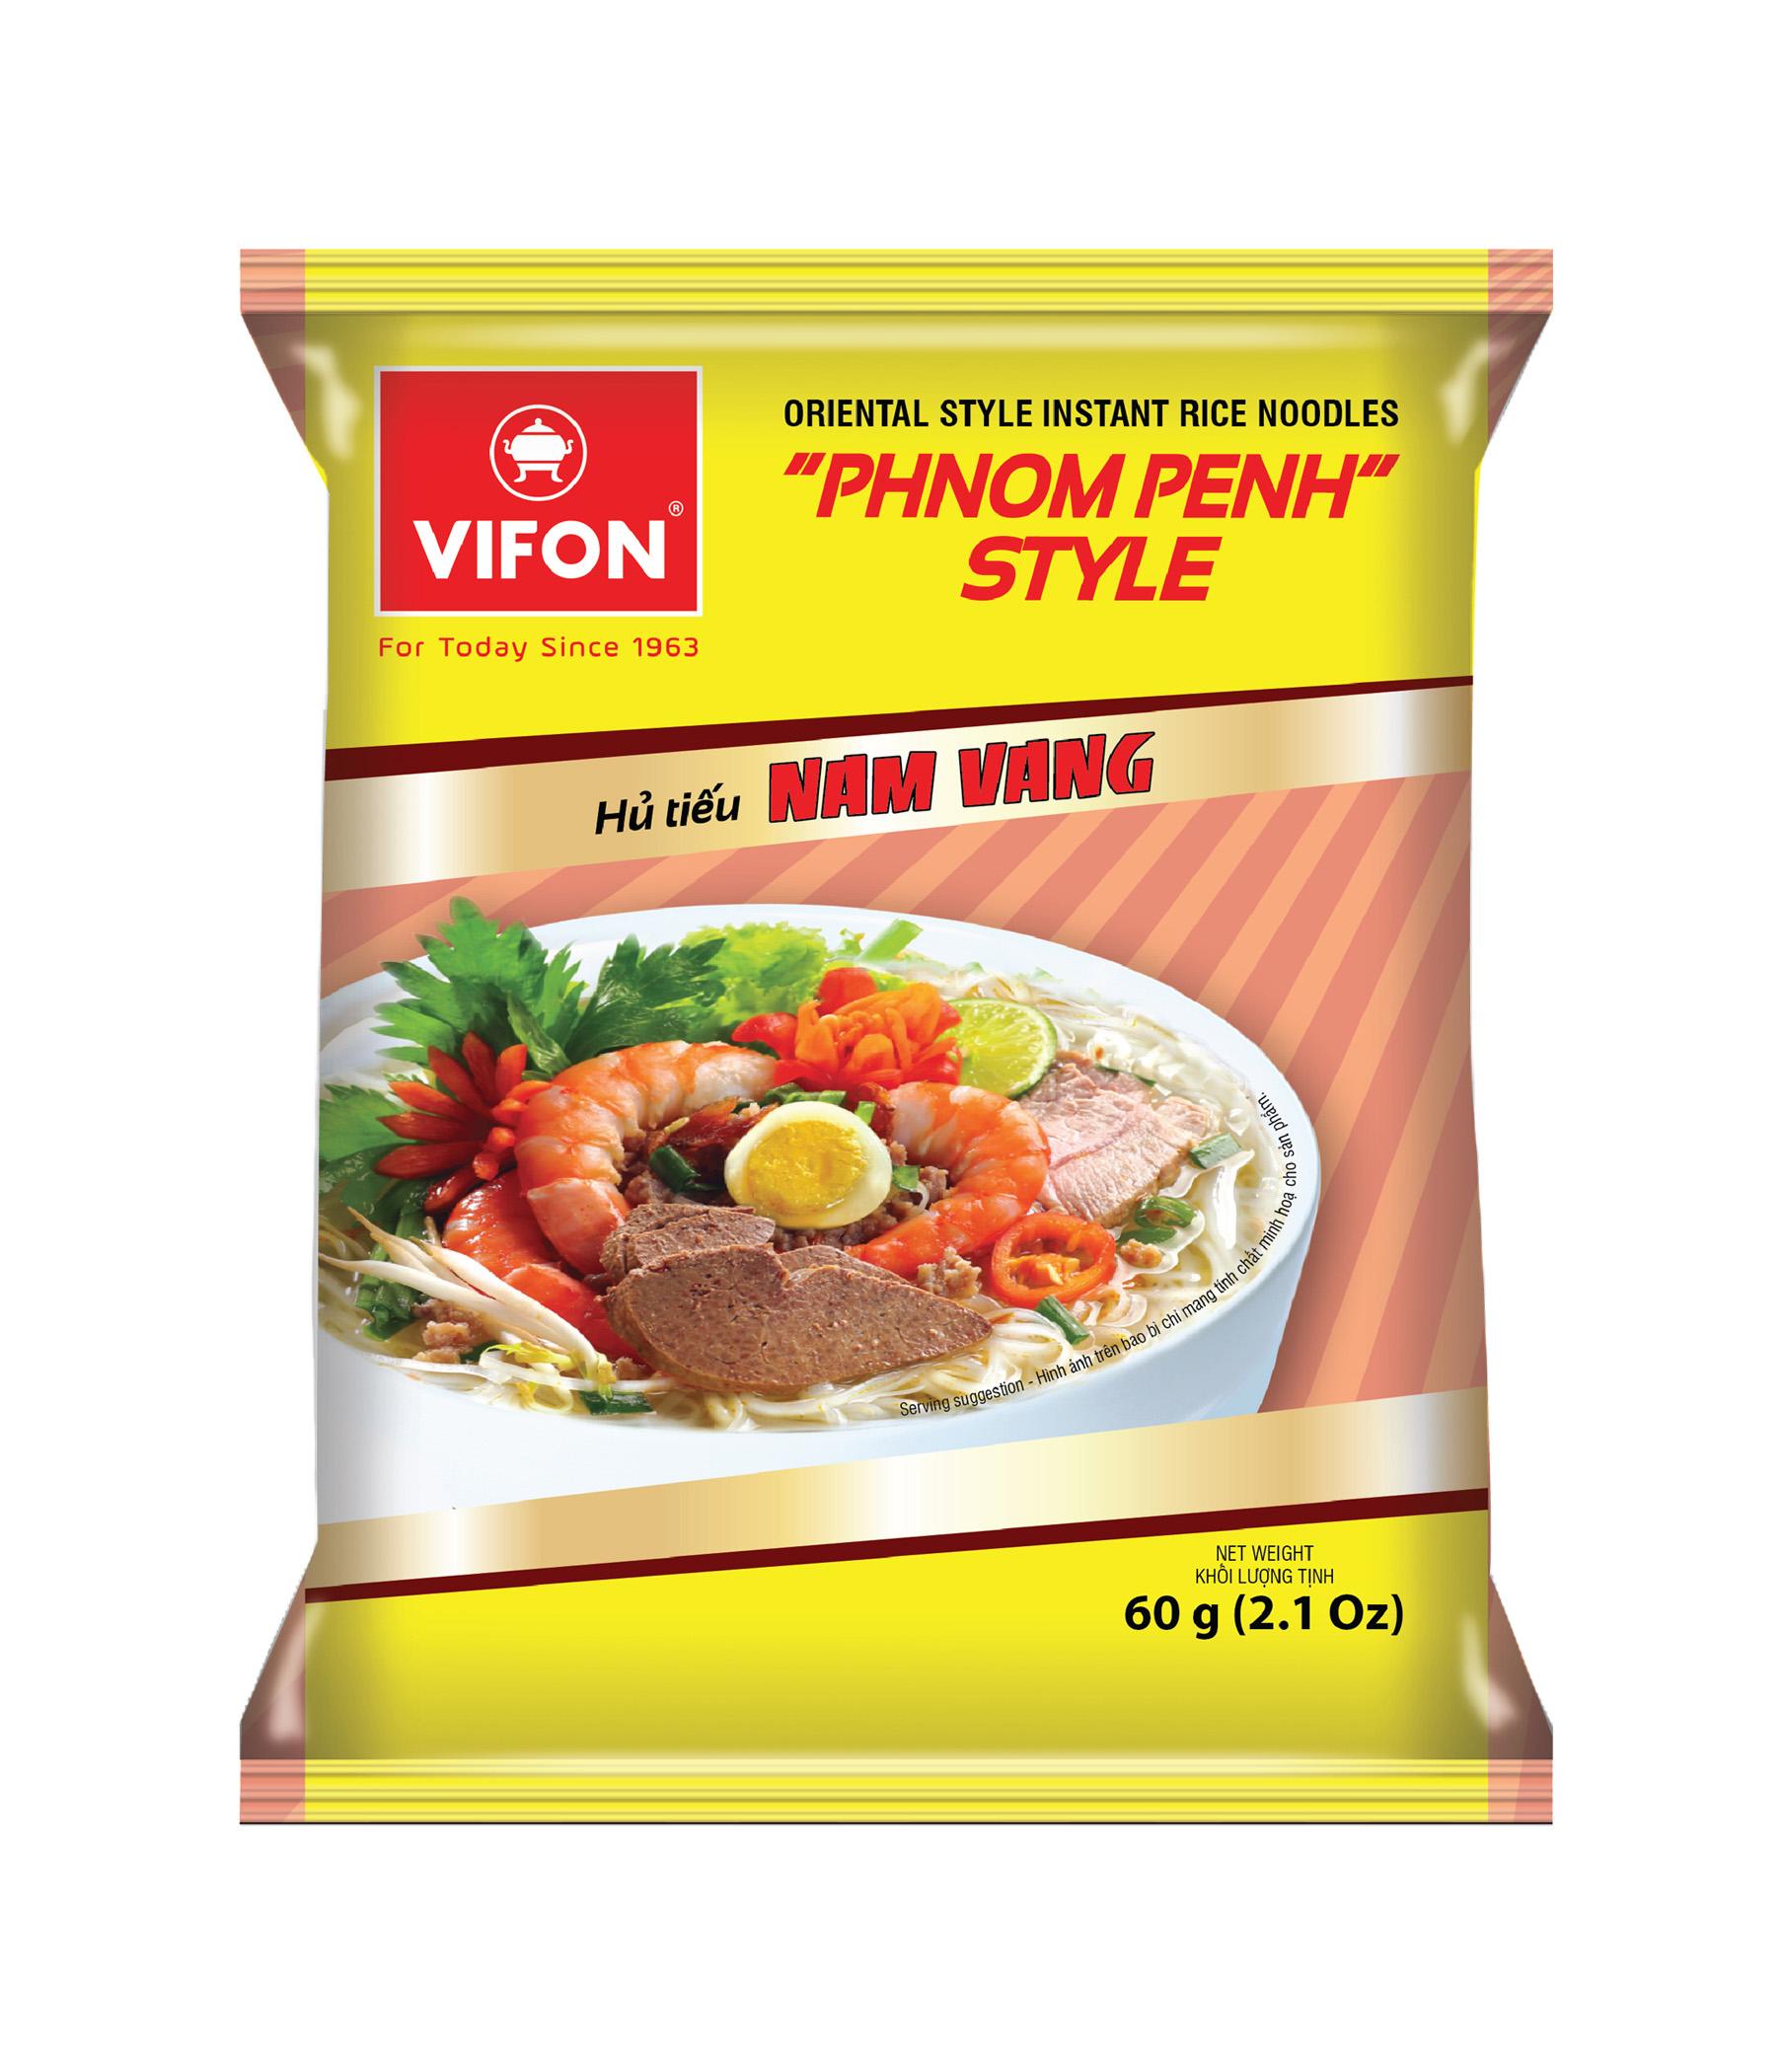 Лапша быстрого приготовления Vifon Phnom Penh рисовая лапша 60 гр., флоу-пак